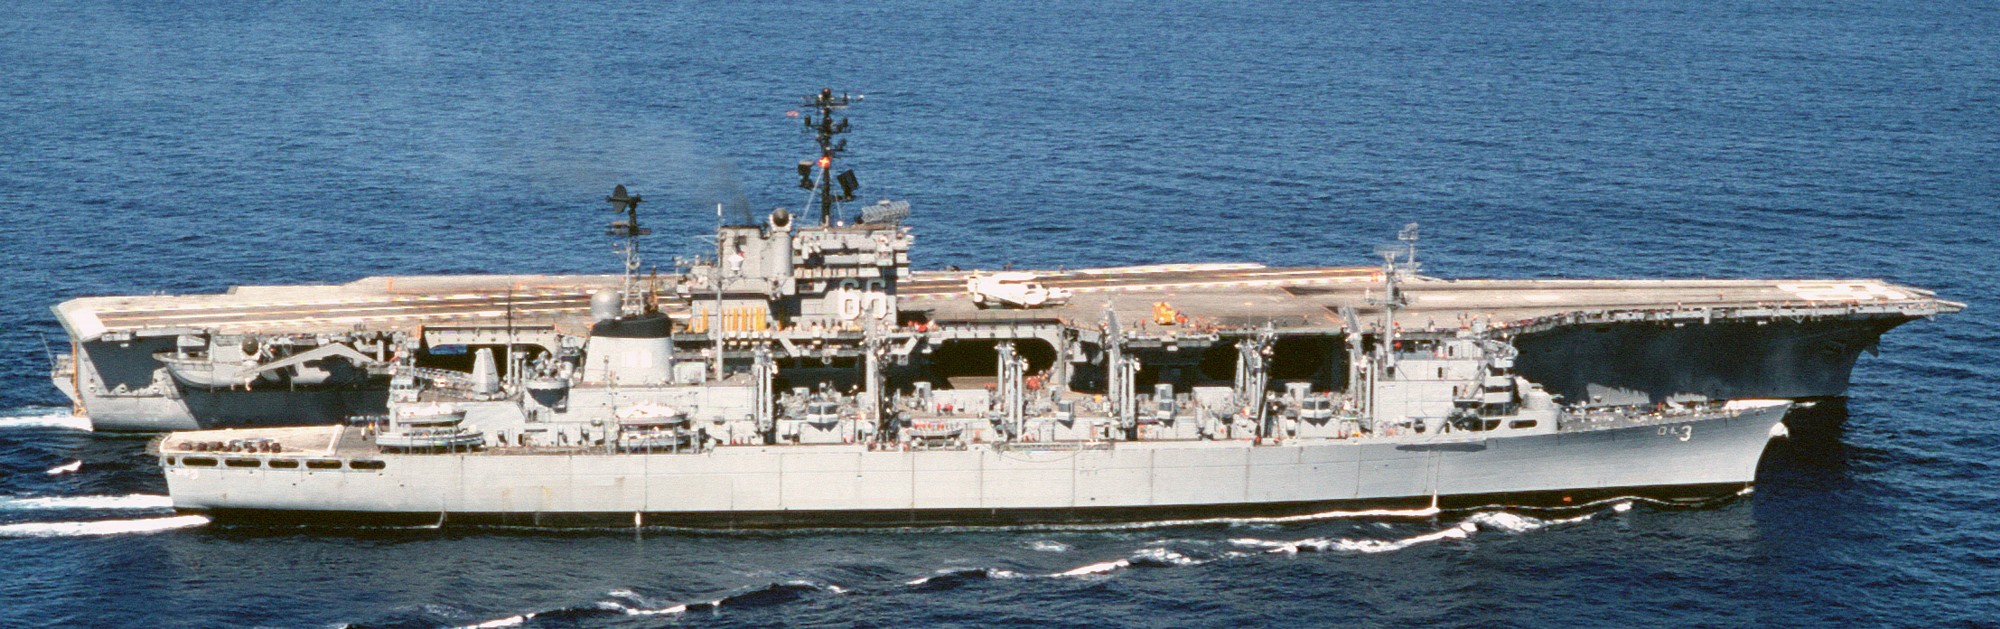 cv-66 uss america kitty hawk class aircraft carrier us navy 26